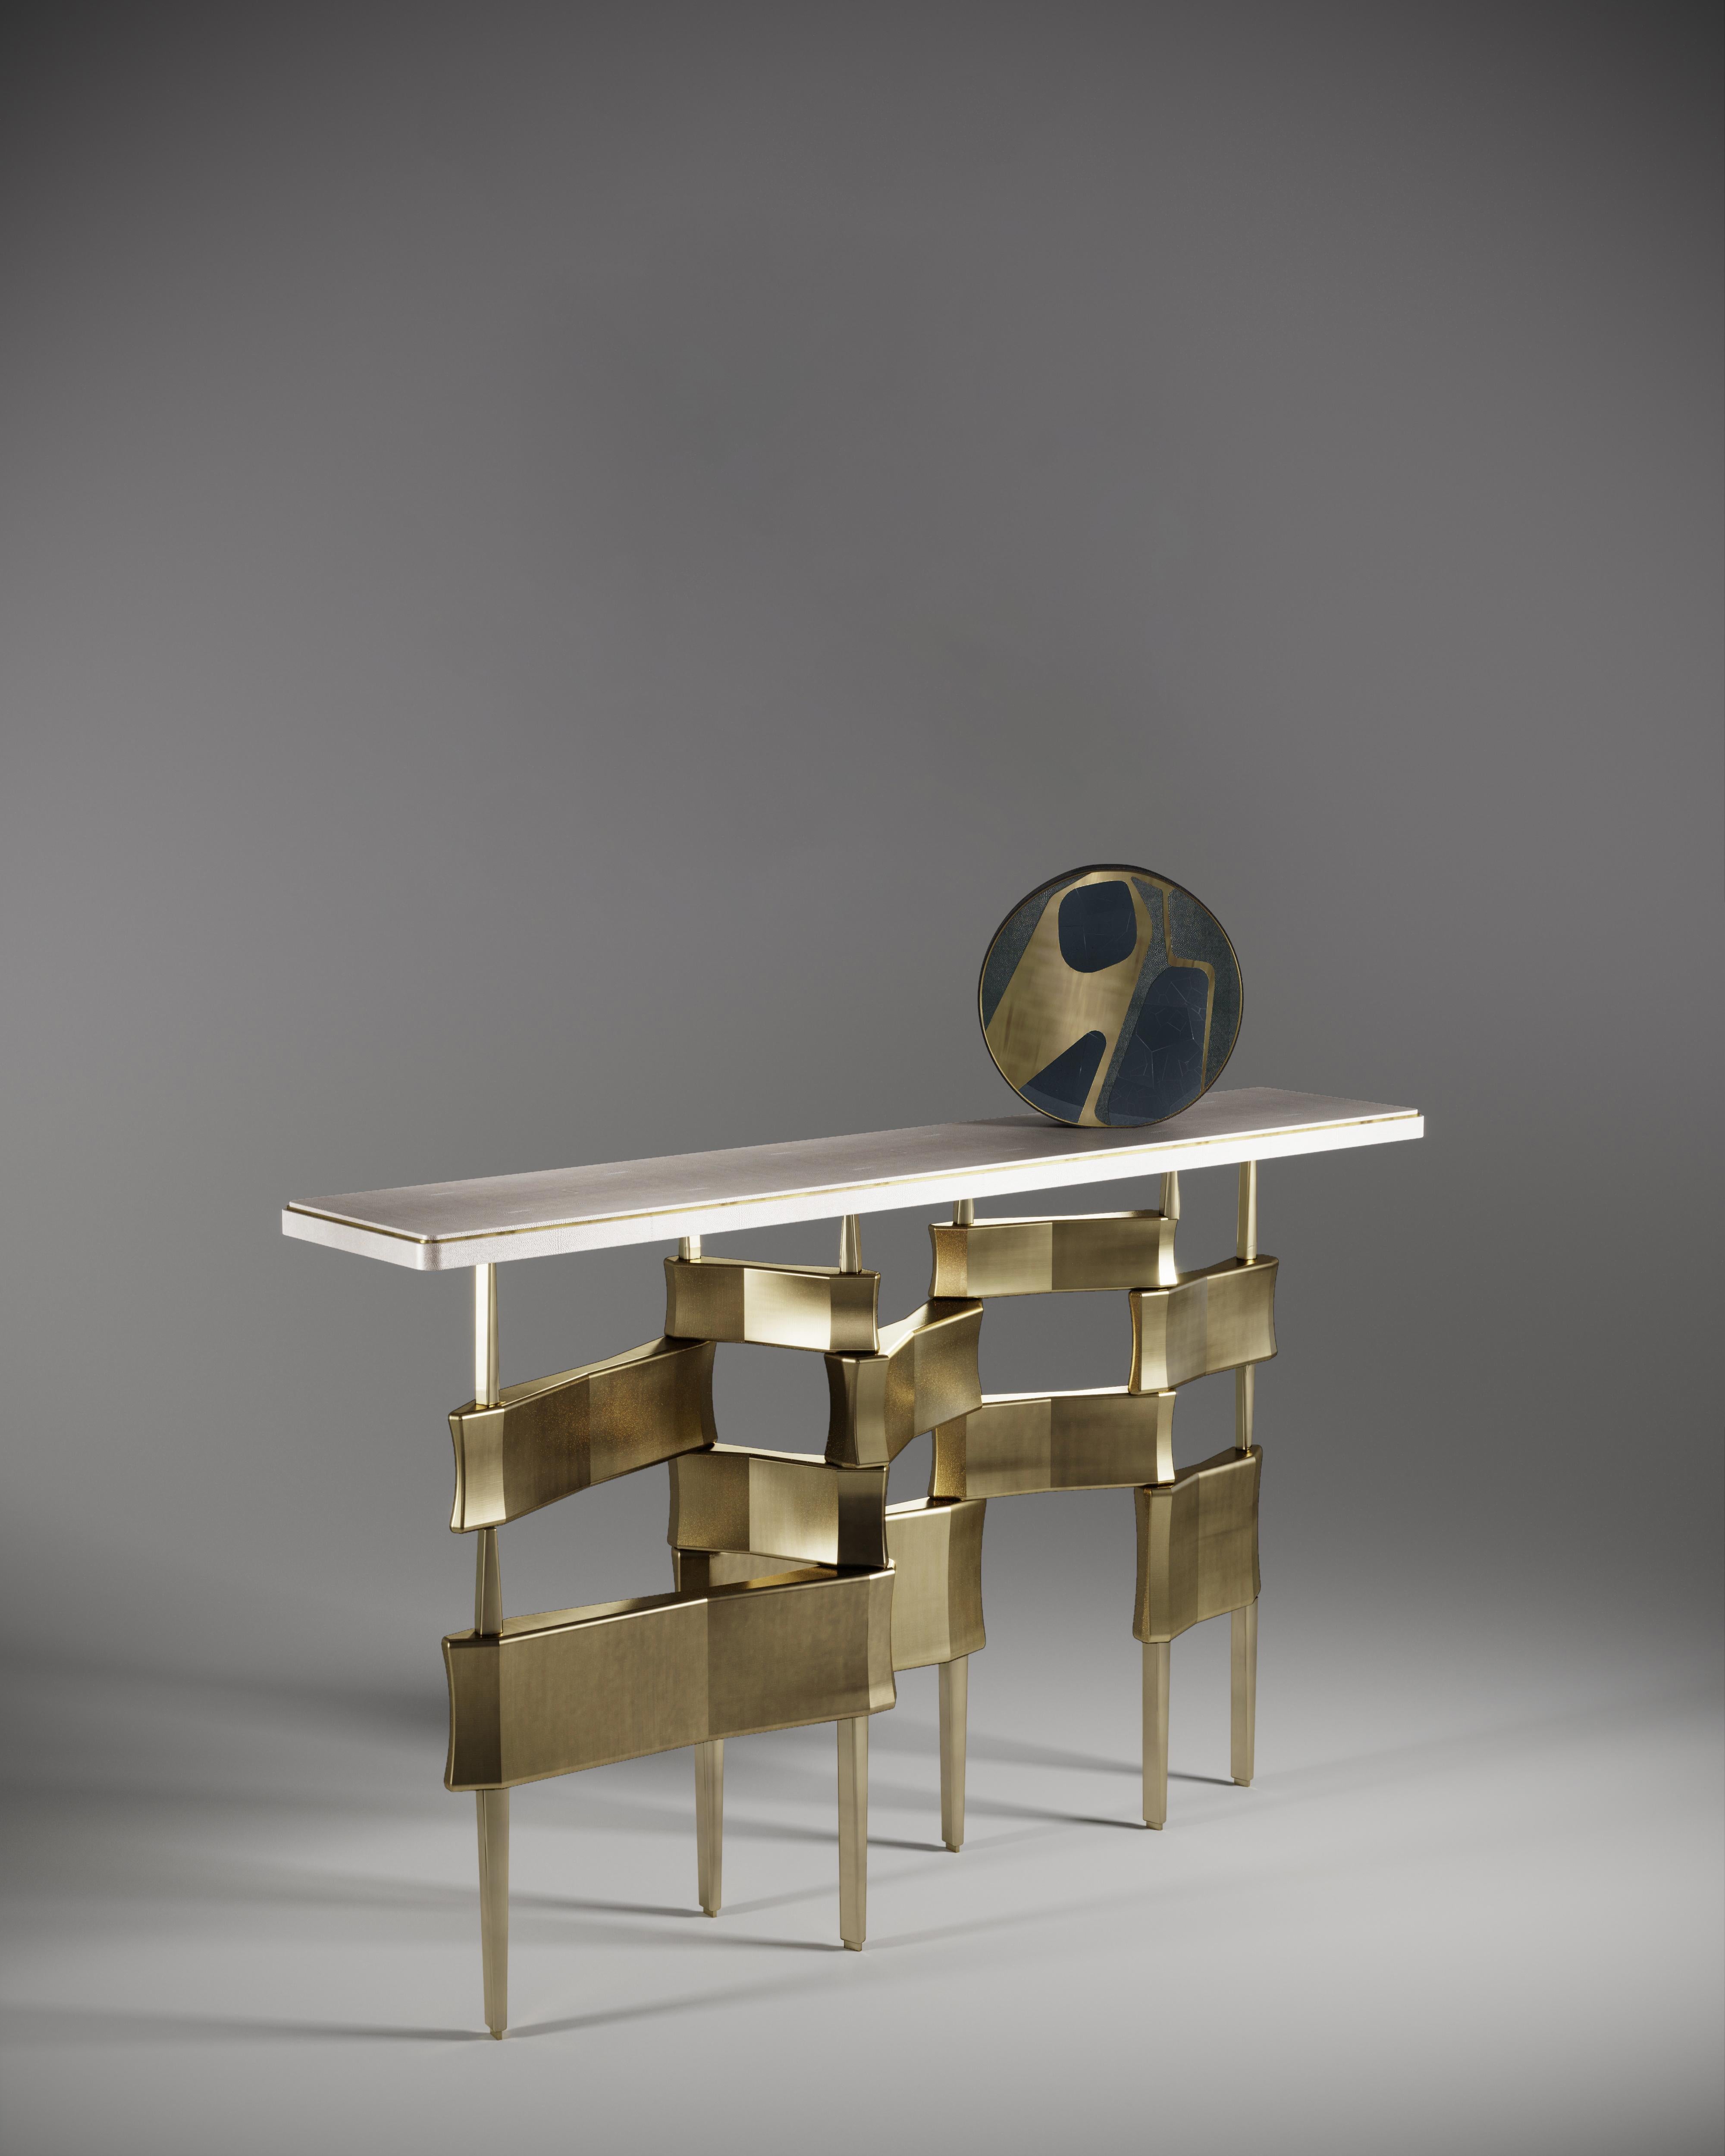 La table console Metropolis de Kifu Paris est un design dramatique et sculptural qui démontre l'incroyable travail artisanal et la signature de ses gènes Augousti. La base de la console, en laiton patiné, s'inspire conceptuellement de la ligne